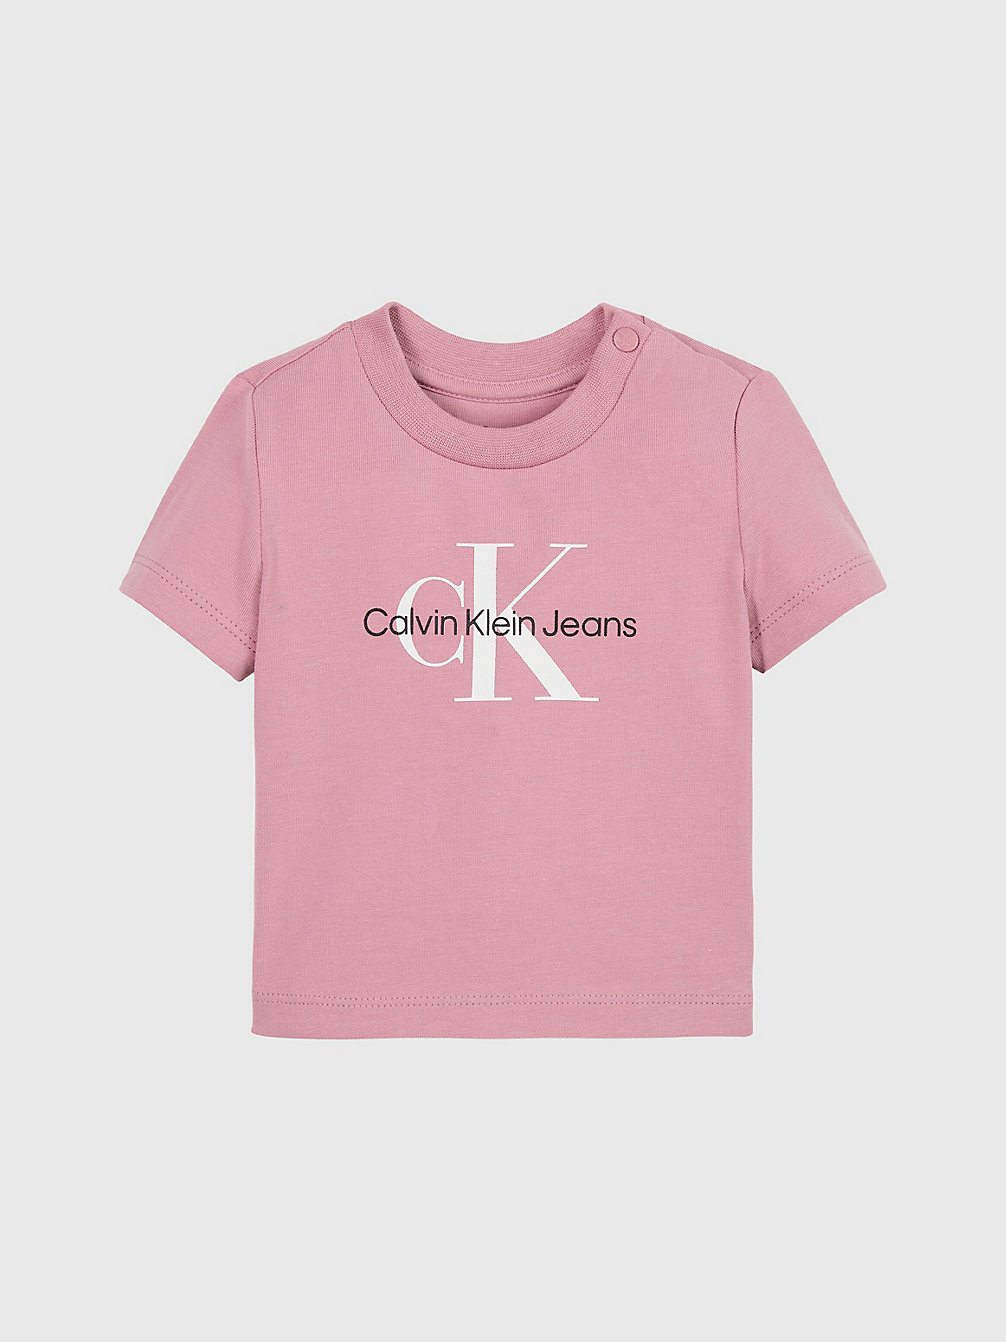 FOXGLOVE Newborn Logo T-Shirt undefined newborn Calvin Klein